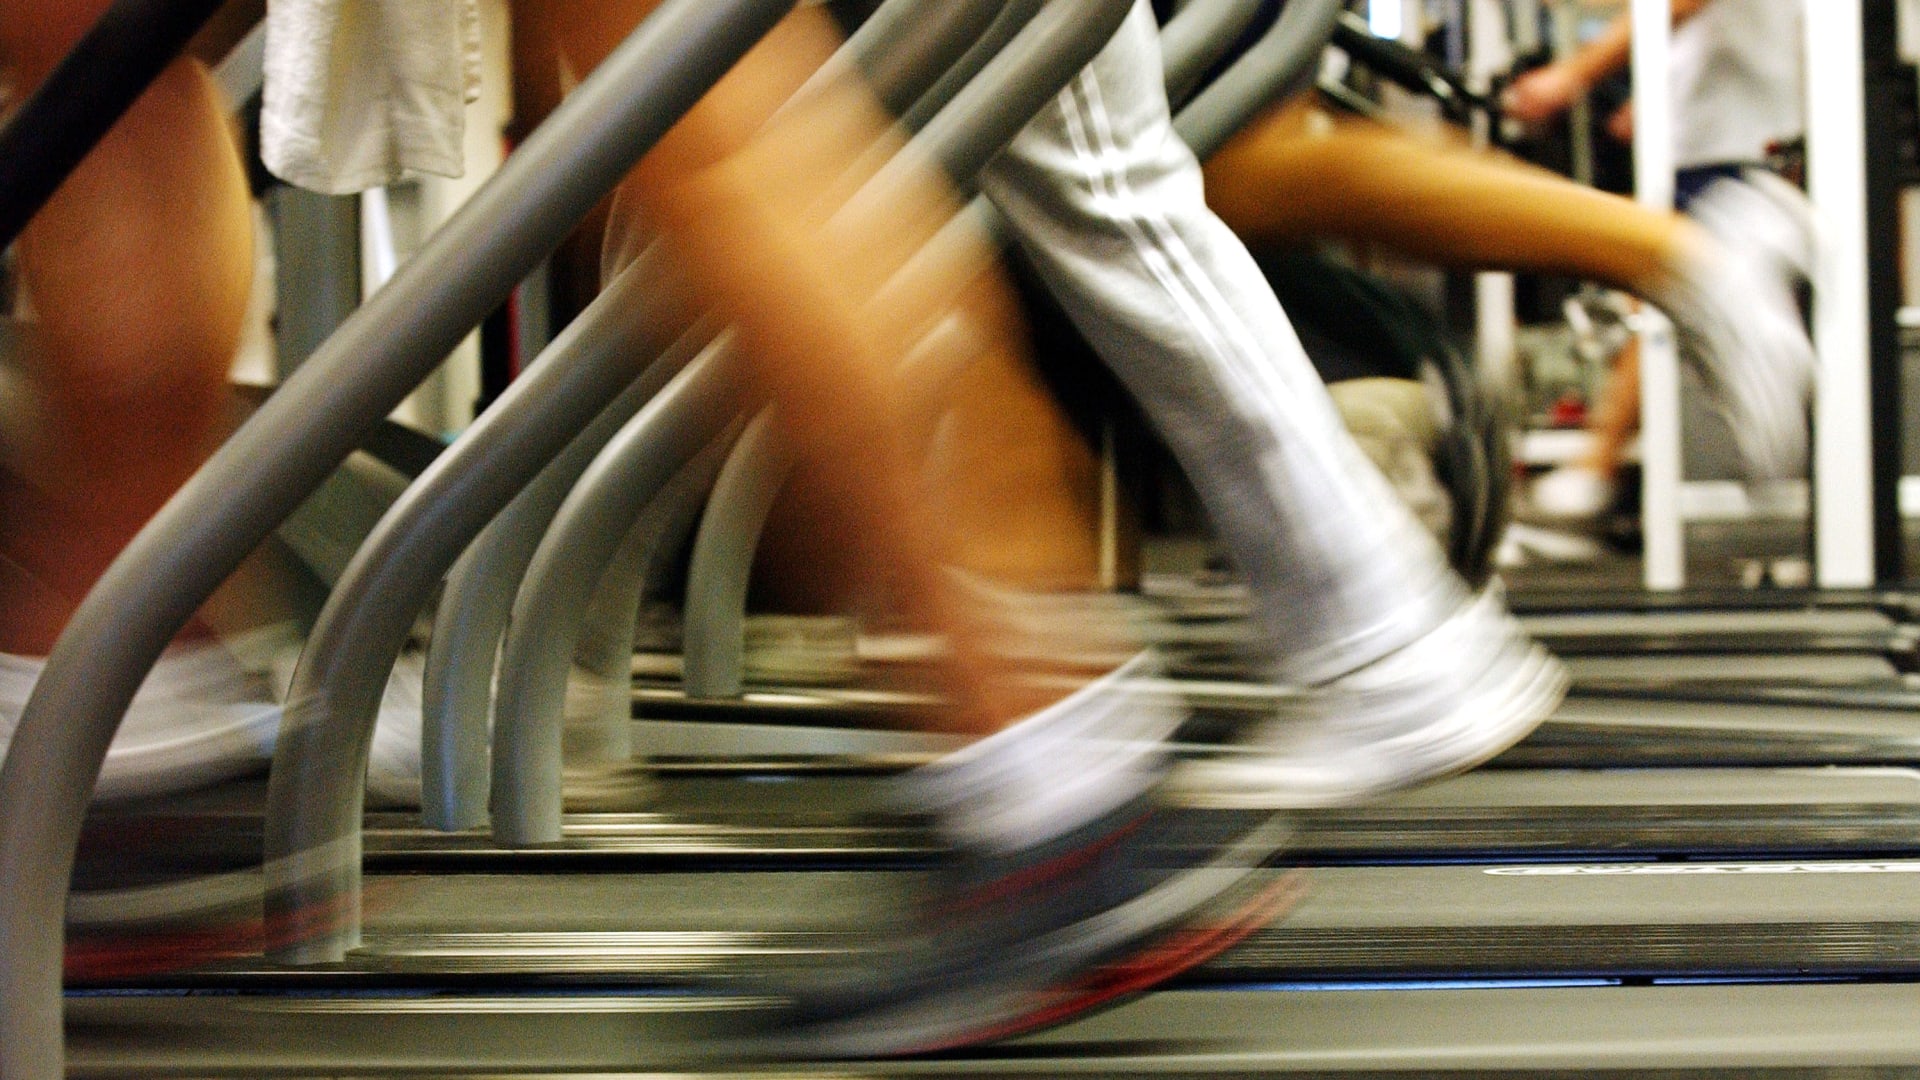 دراسة: قوة عضلات الساق قد ترتبط بنتائج أفضل عقب الإصابة بنوبة قلبية